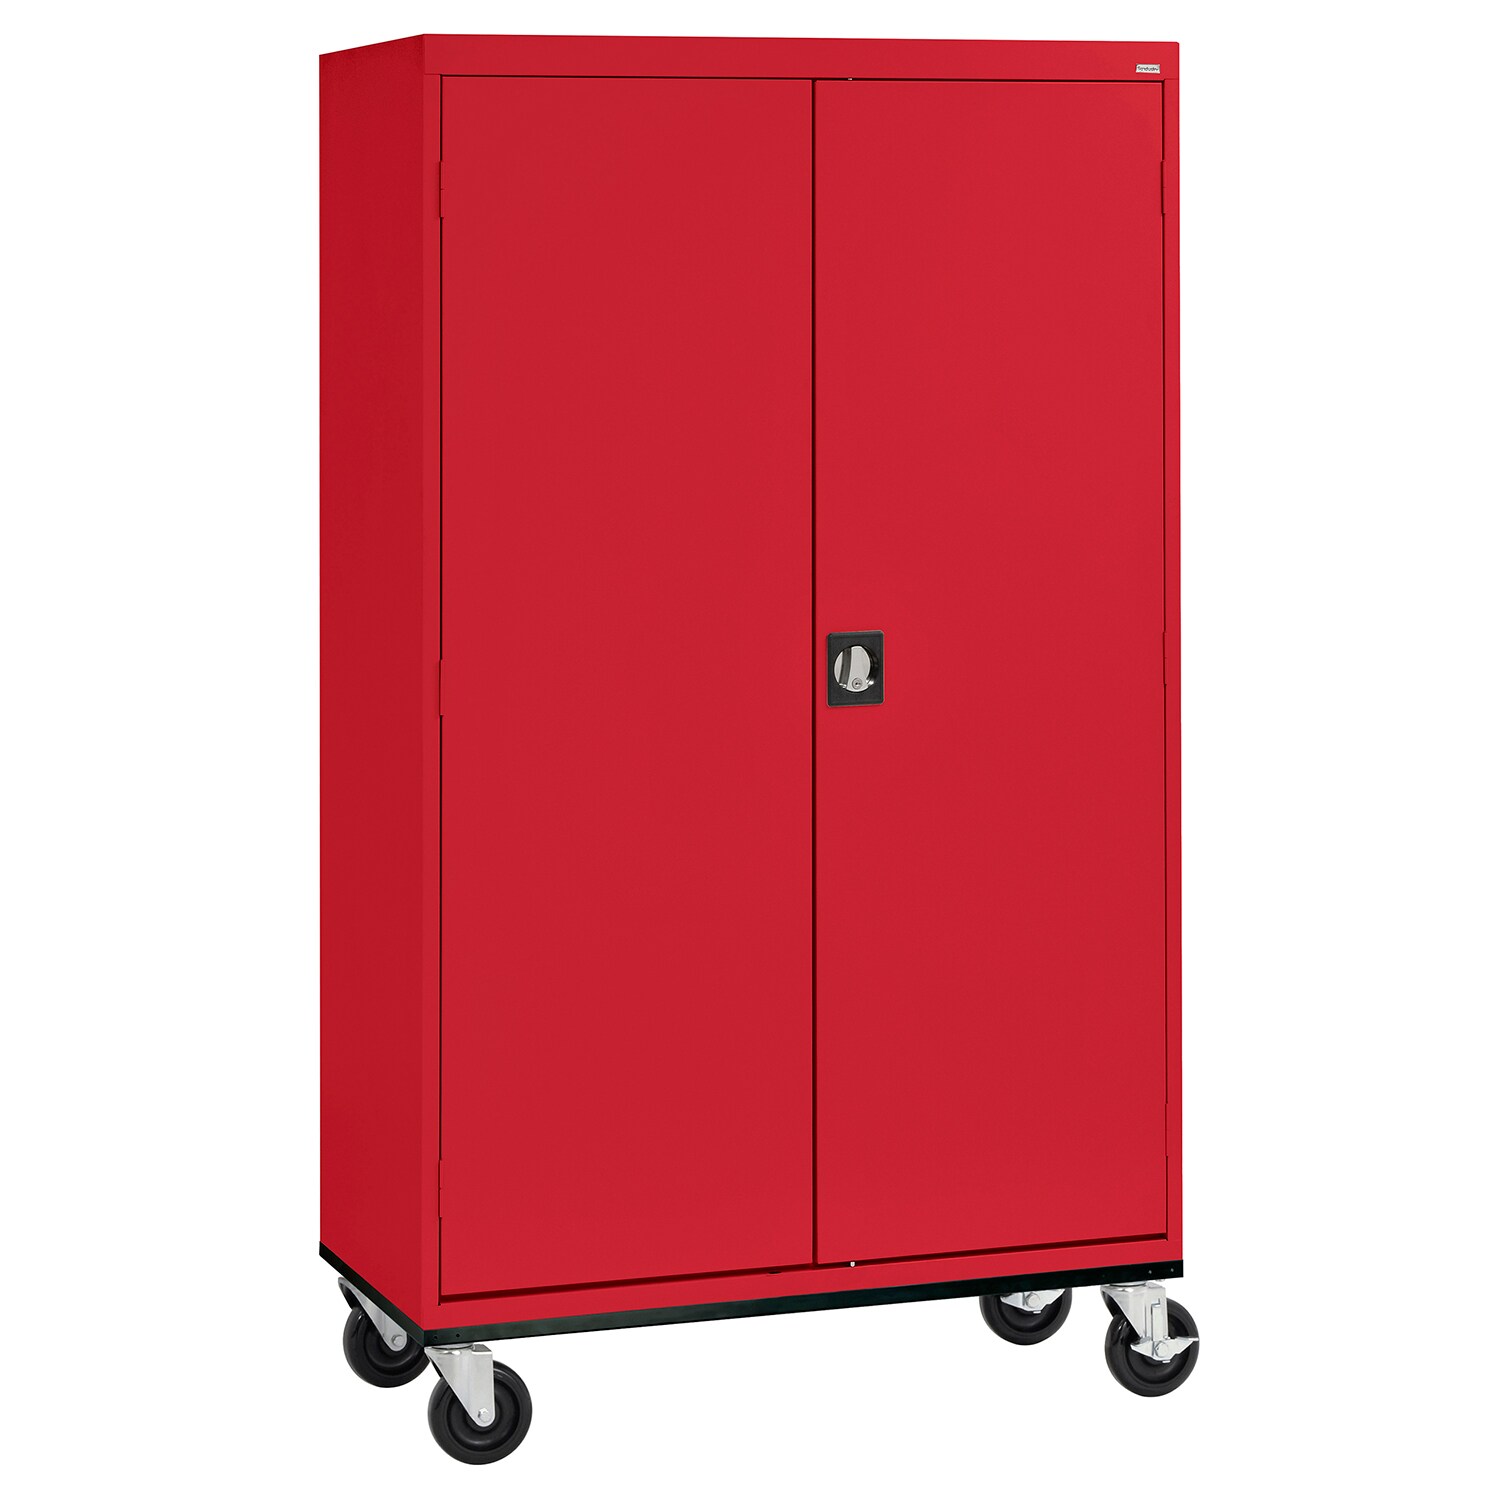 Steel Freestanding Garage Cabinet in Red (46-in W x 78-in H x 24-in D) | - Sandusky TAWR462472-01